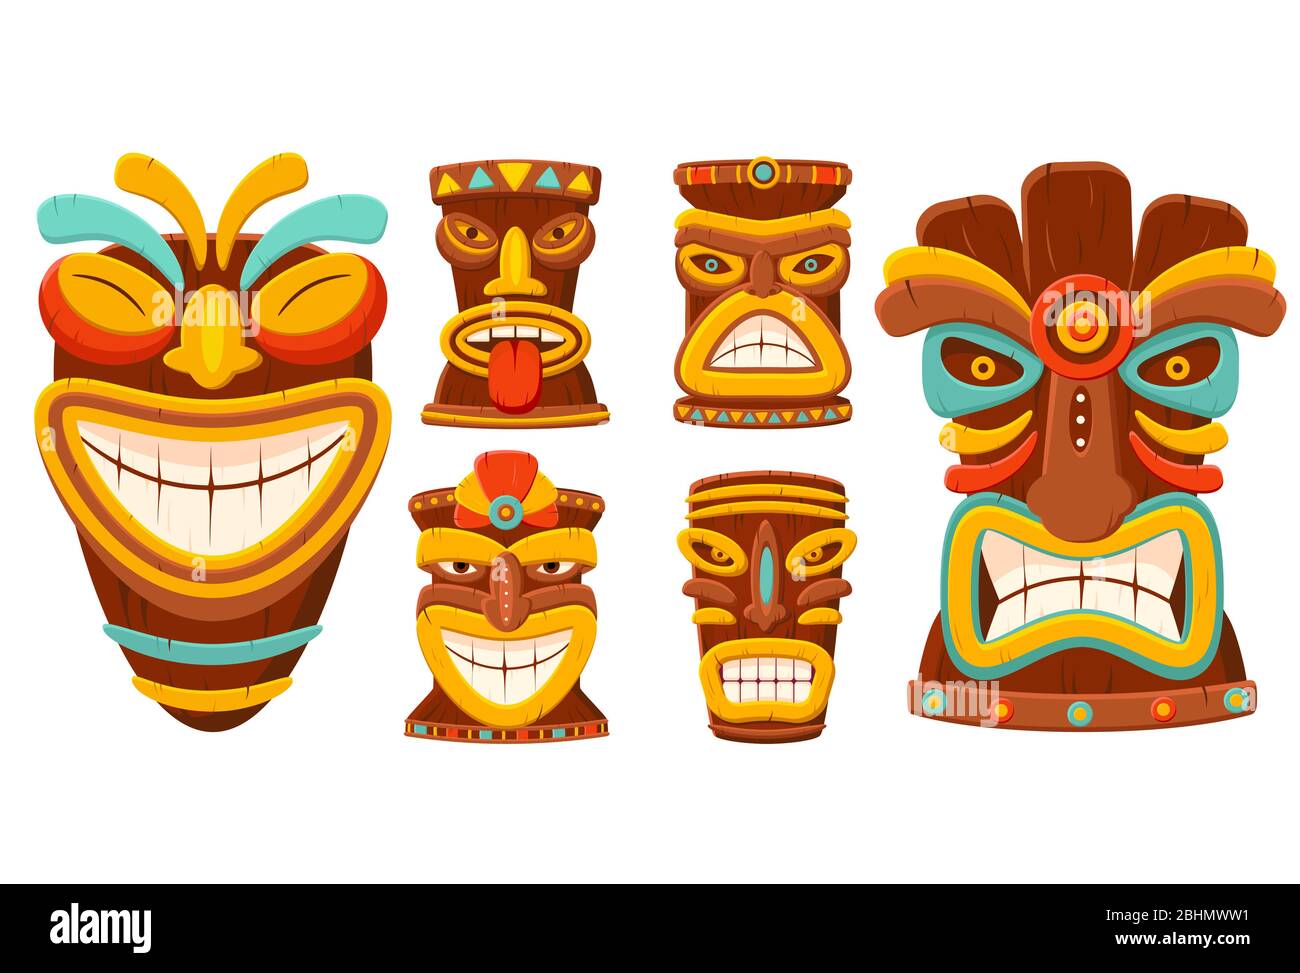 Masque tribale traditionnel hawaïen tiki. Collection de masques ou totems polynésiens. Masque traditionnel africain en bois. Isolé sur fond blanc Illustration de Vecteur